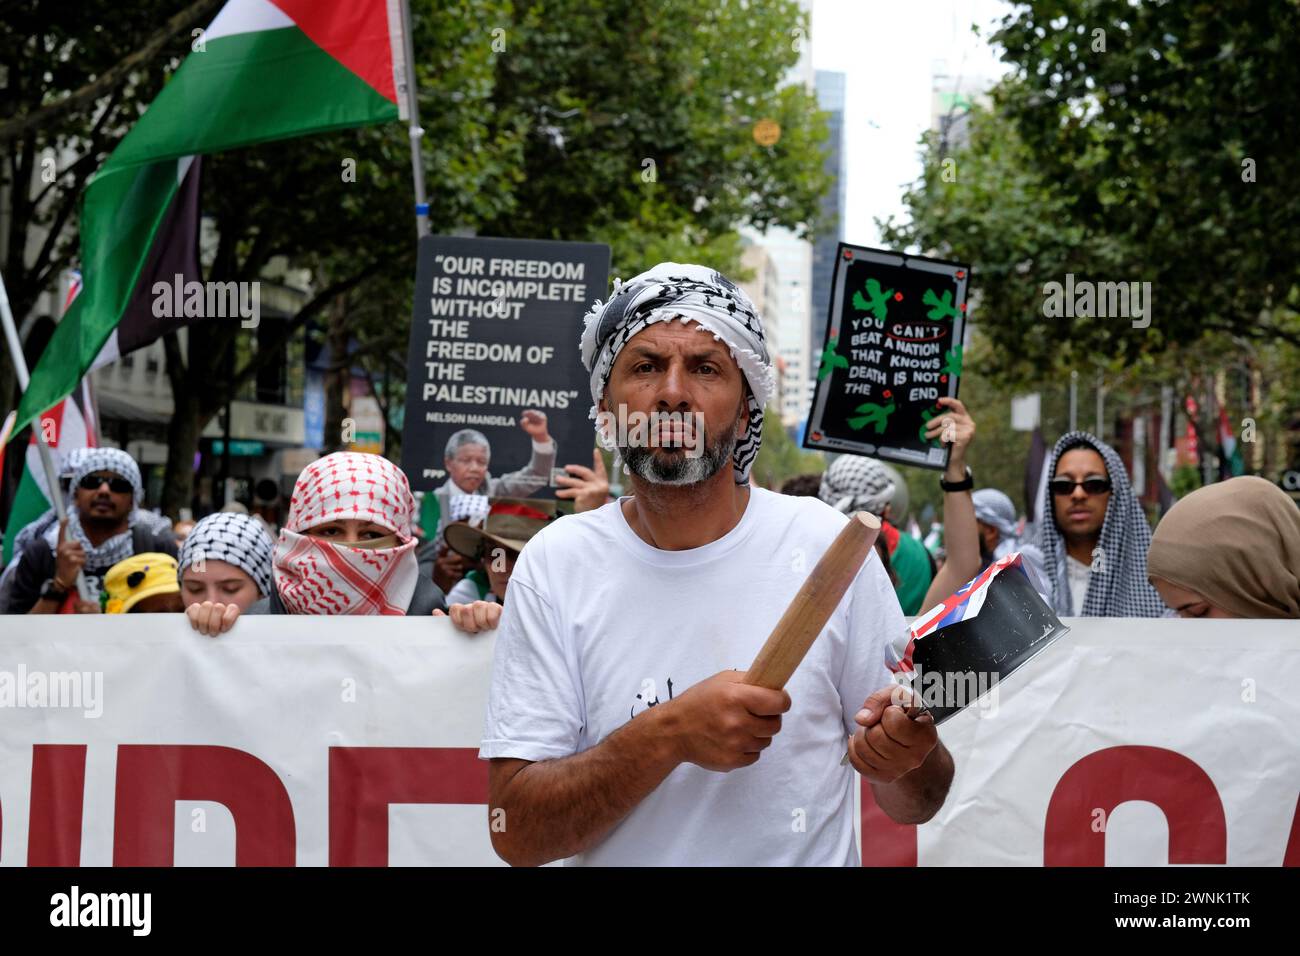 Un homme frappe un pot lors d'un rassemblement pro-palestinien à Melbourne, Victoria, Australie Banque D'Images